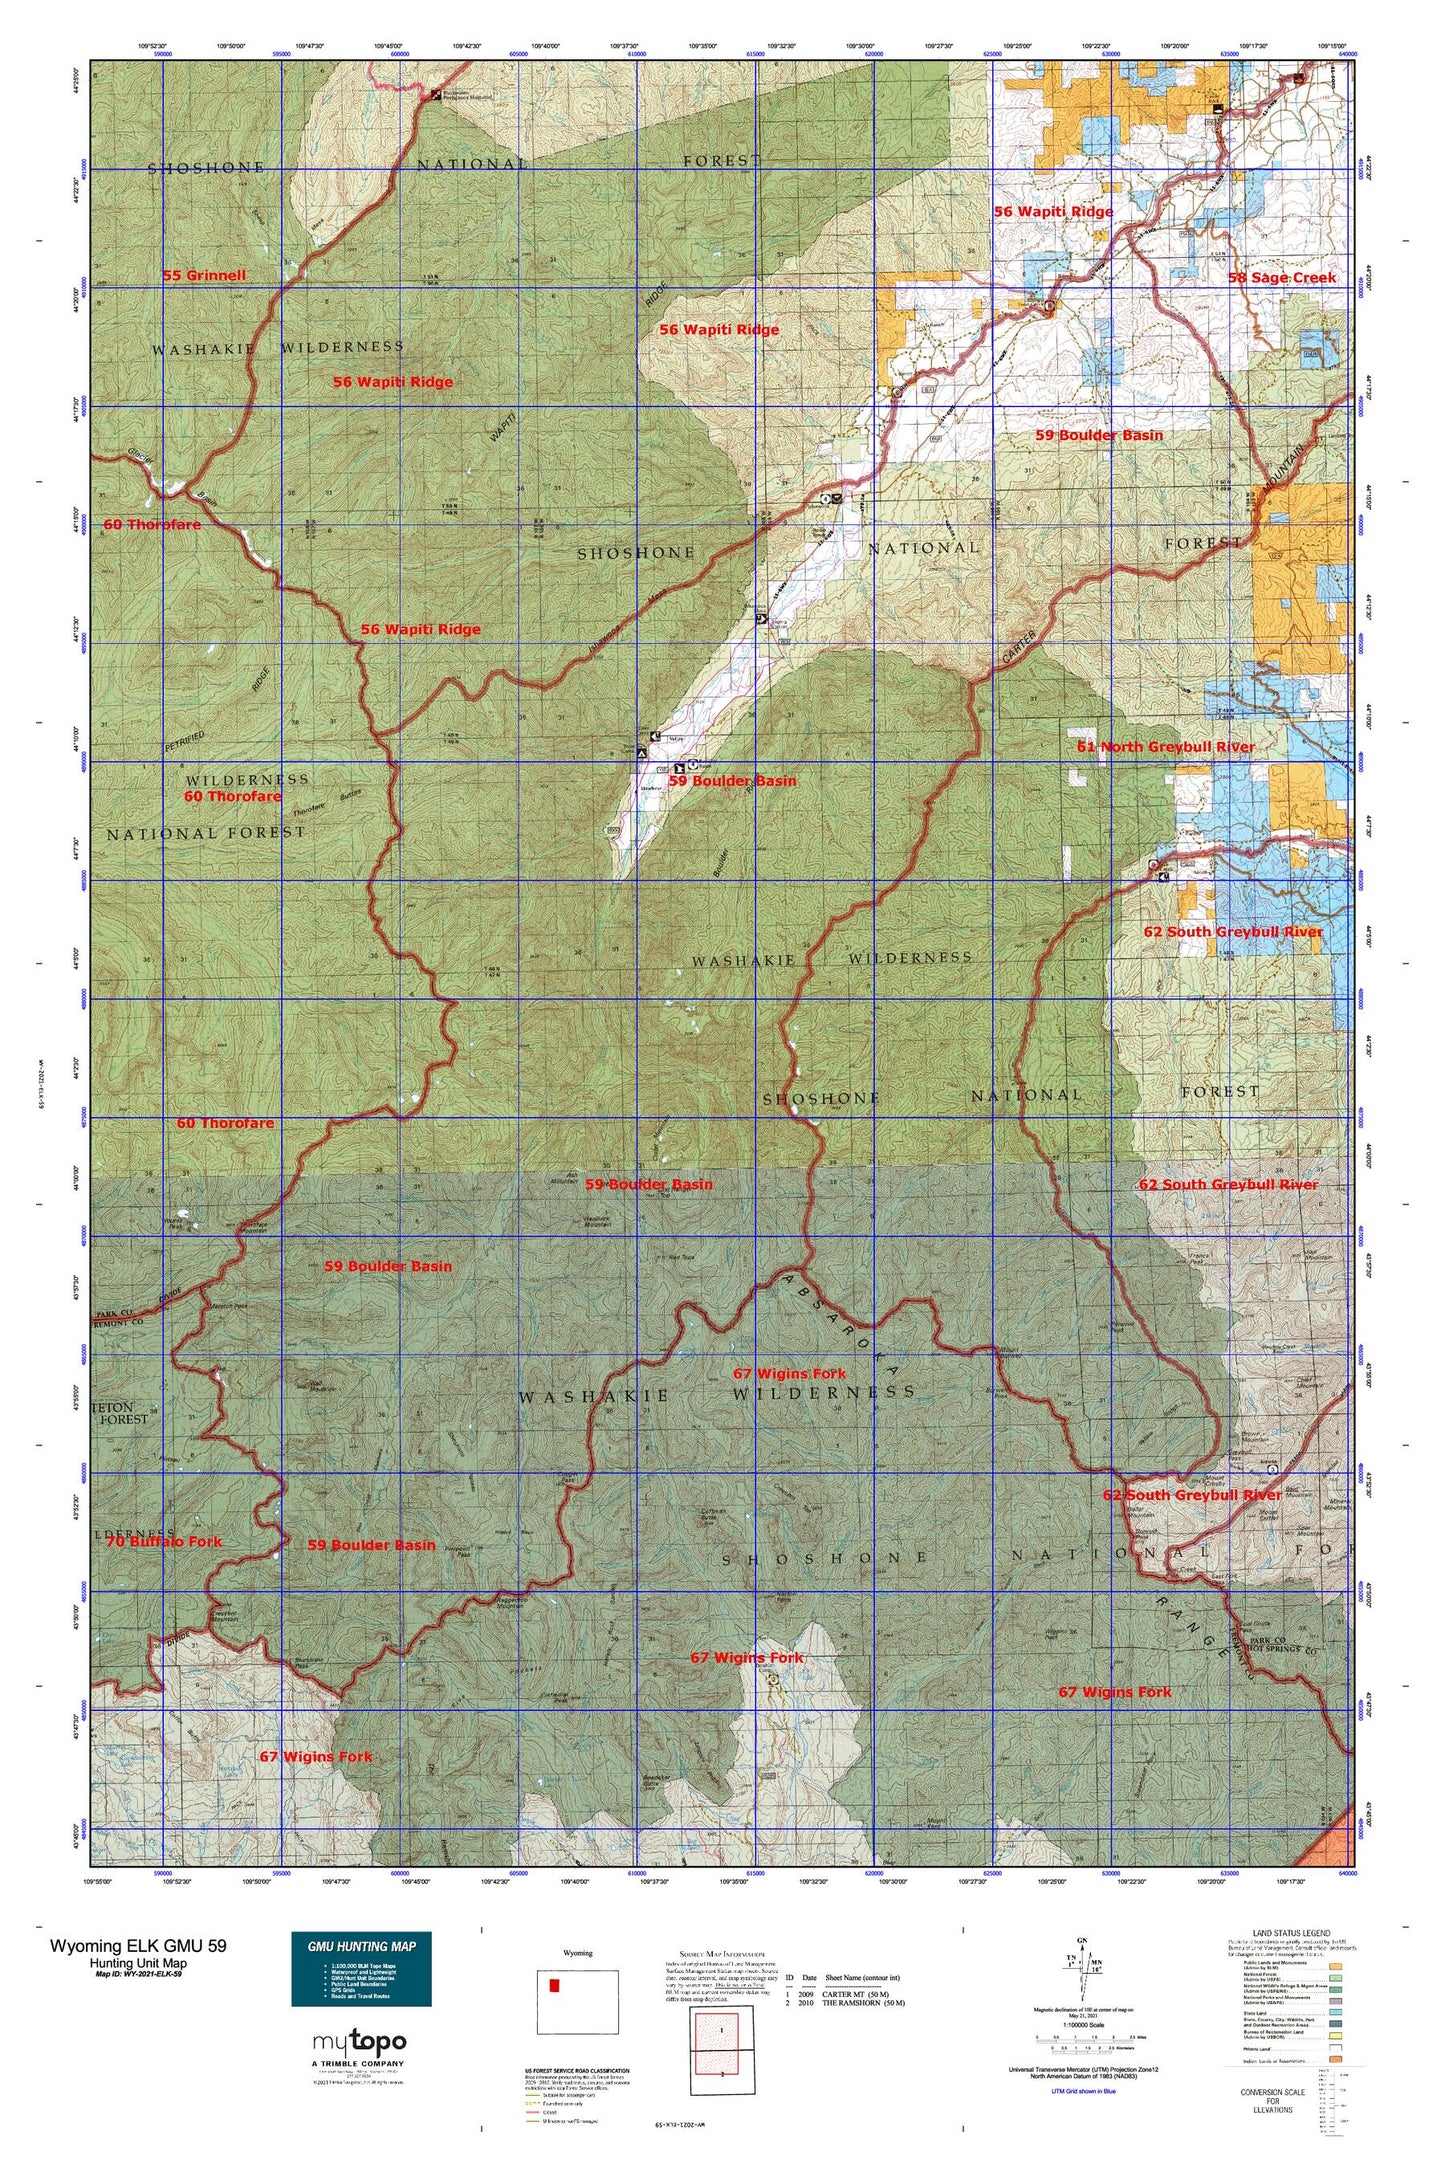 Wyoming Elk GMU 59 Map Image